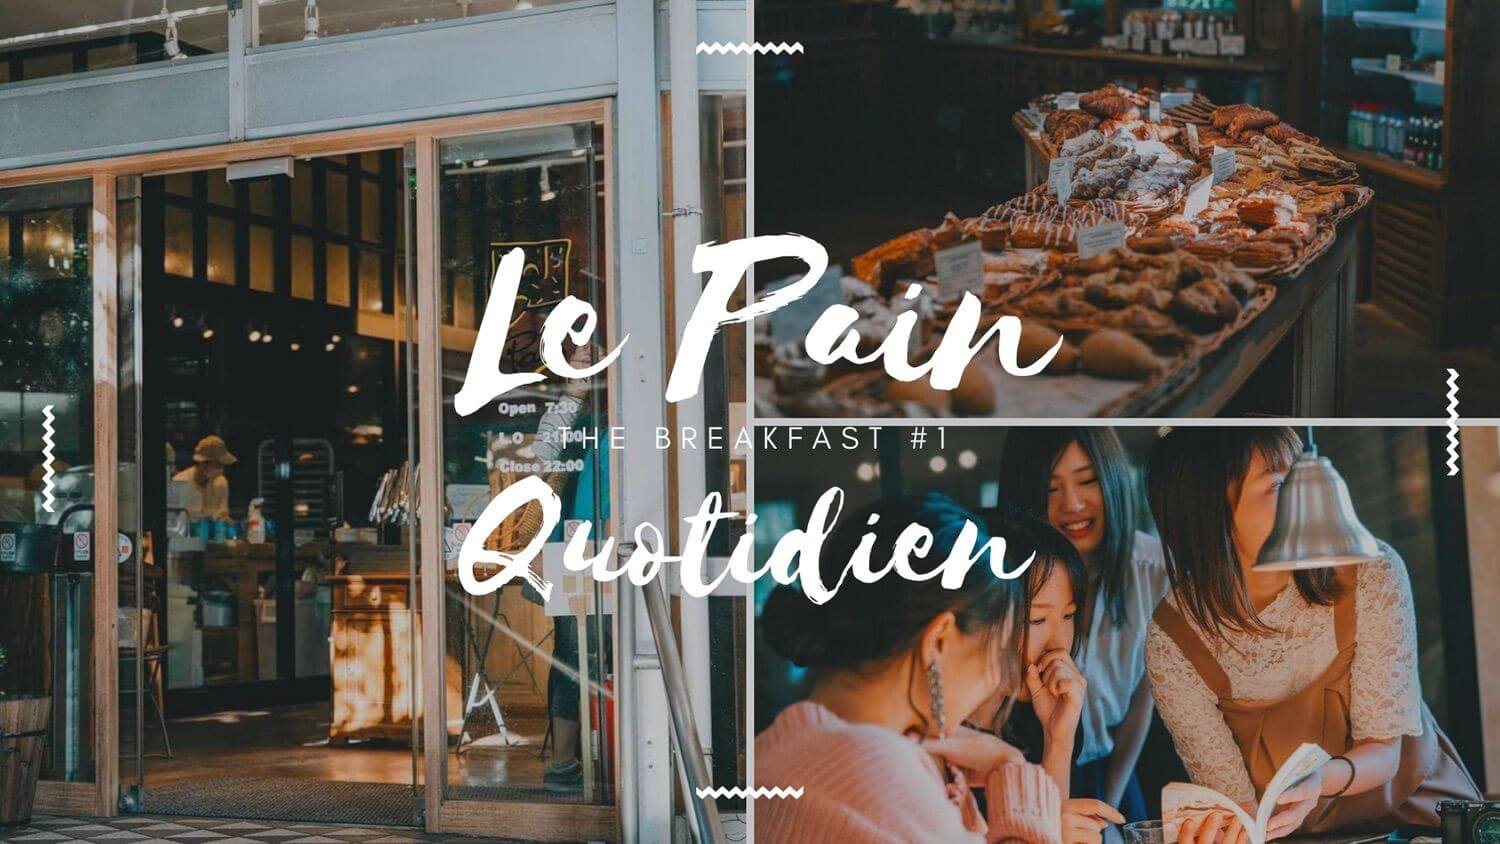 Le Pain Quotidian（ル・パン・コティディアン）のメイン画像